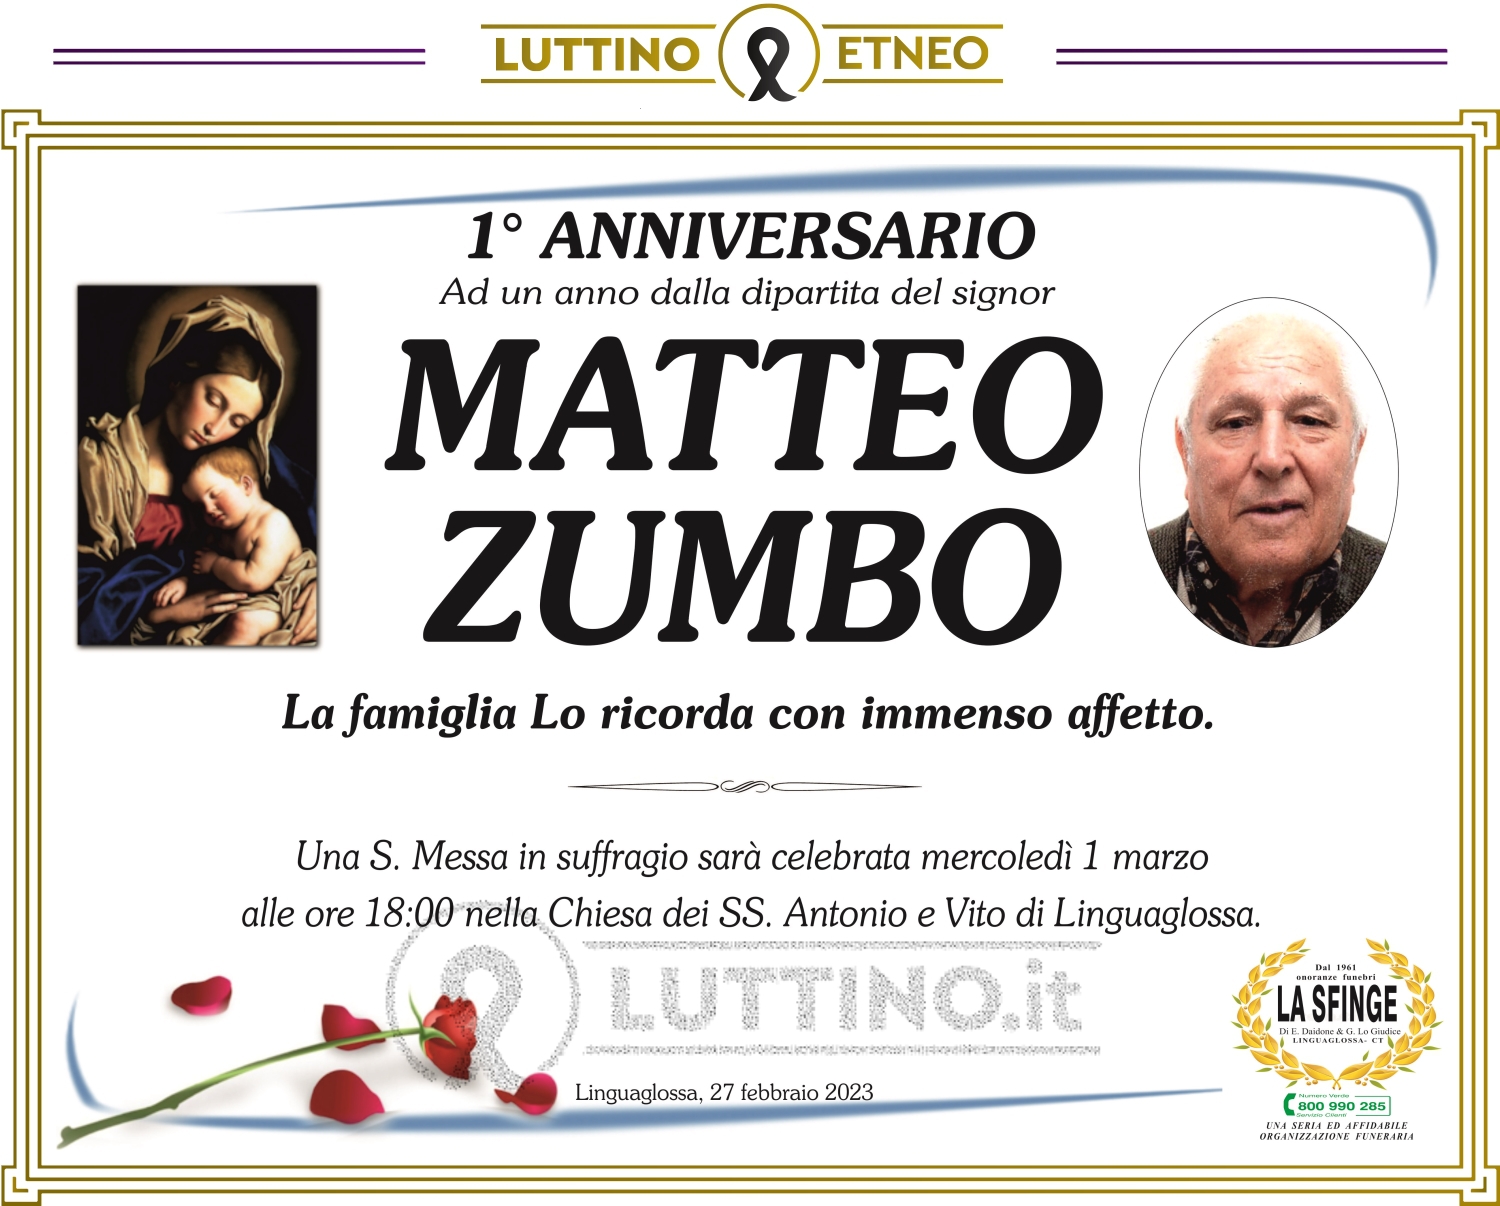 Matteo Zumbo